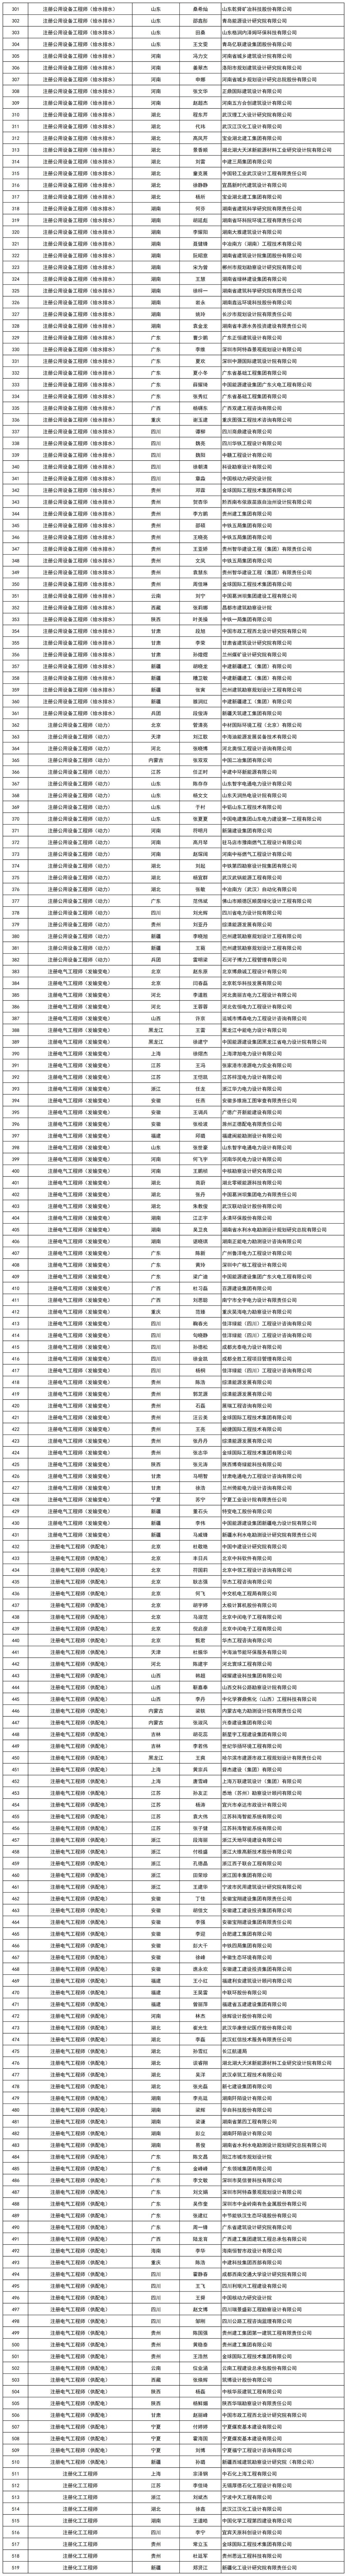 范超勇等519名符合勘察设计注册工程师初始注册条件人员名单_打印结果(1).jpg